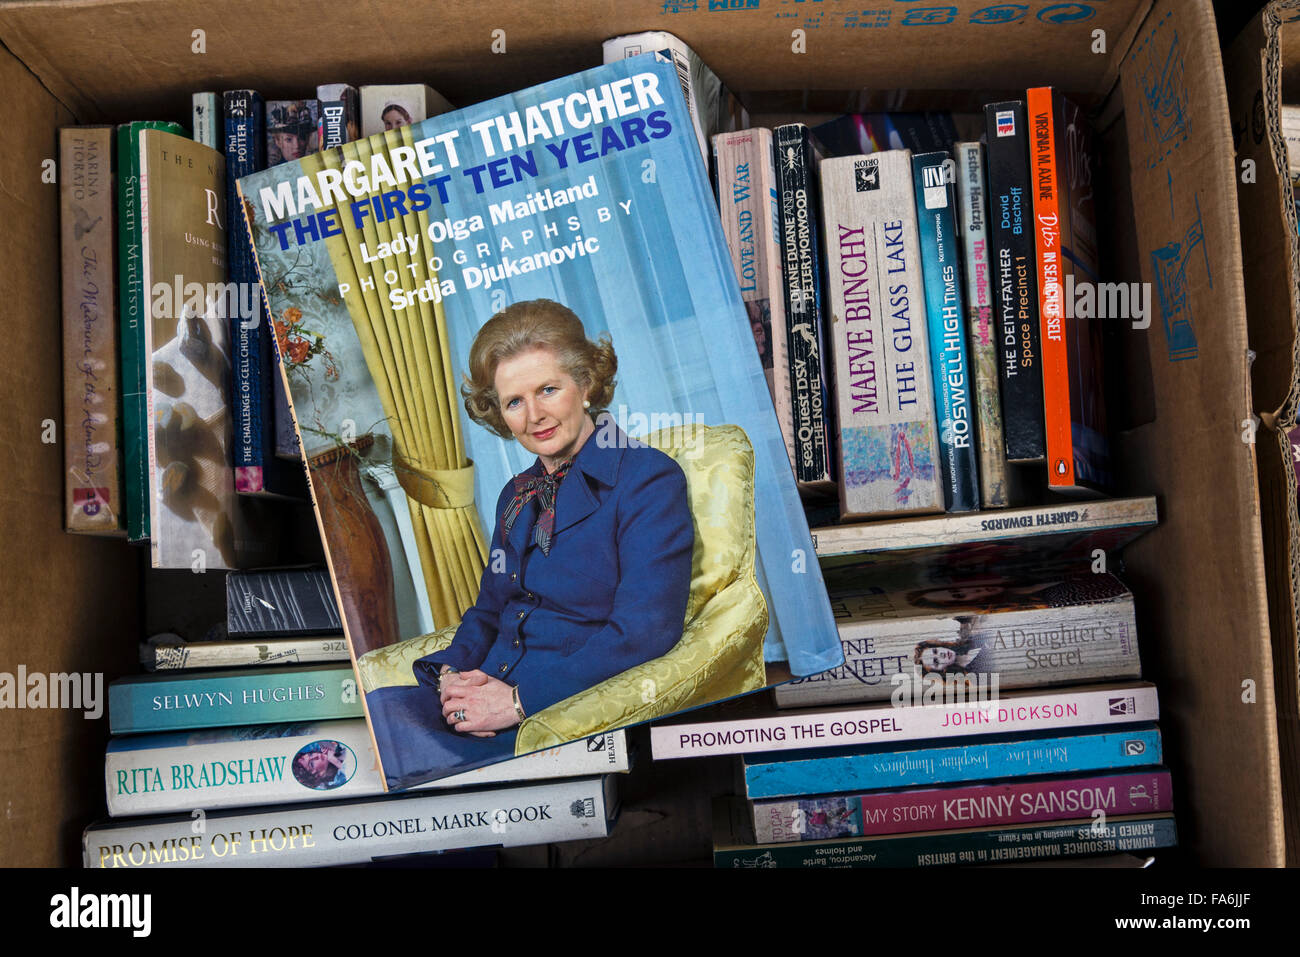 Margaret Thatcher Biographie, die ersten zehn Jahre von Lady Olga Maitland, in den billigen außerhalb einen gebrauchten Buchhandlung in Edinburgh, Schottland, Großbritannien. Stockfoto